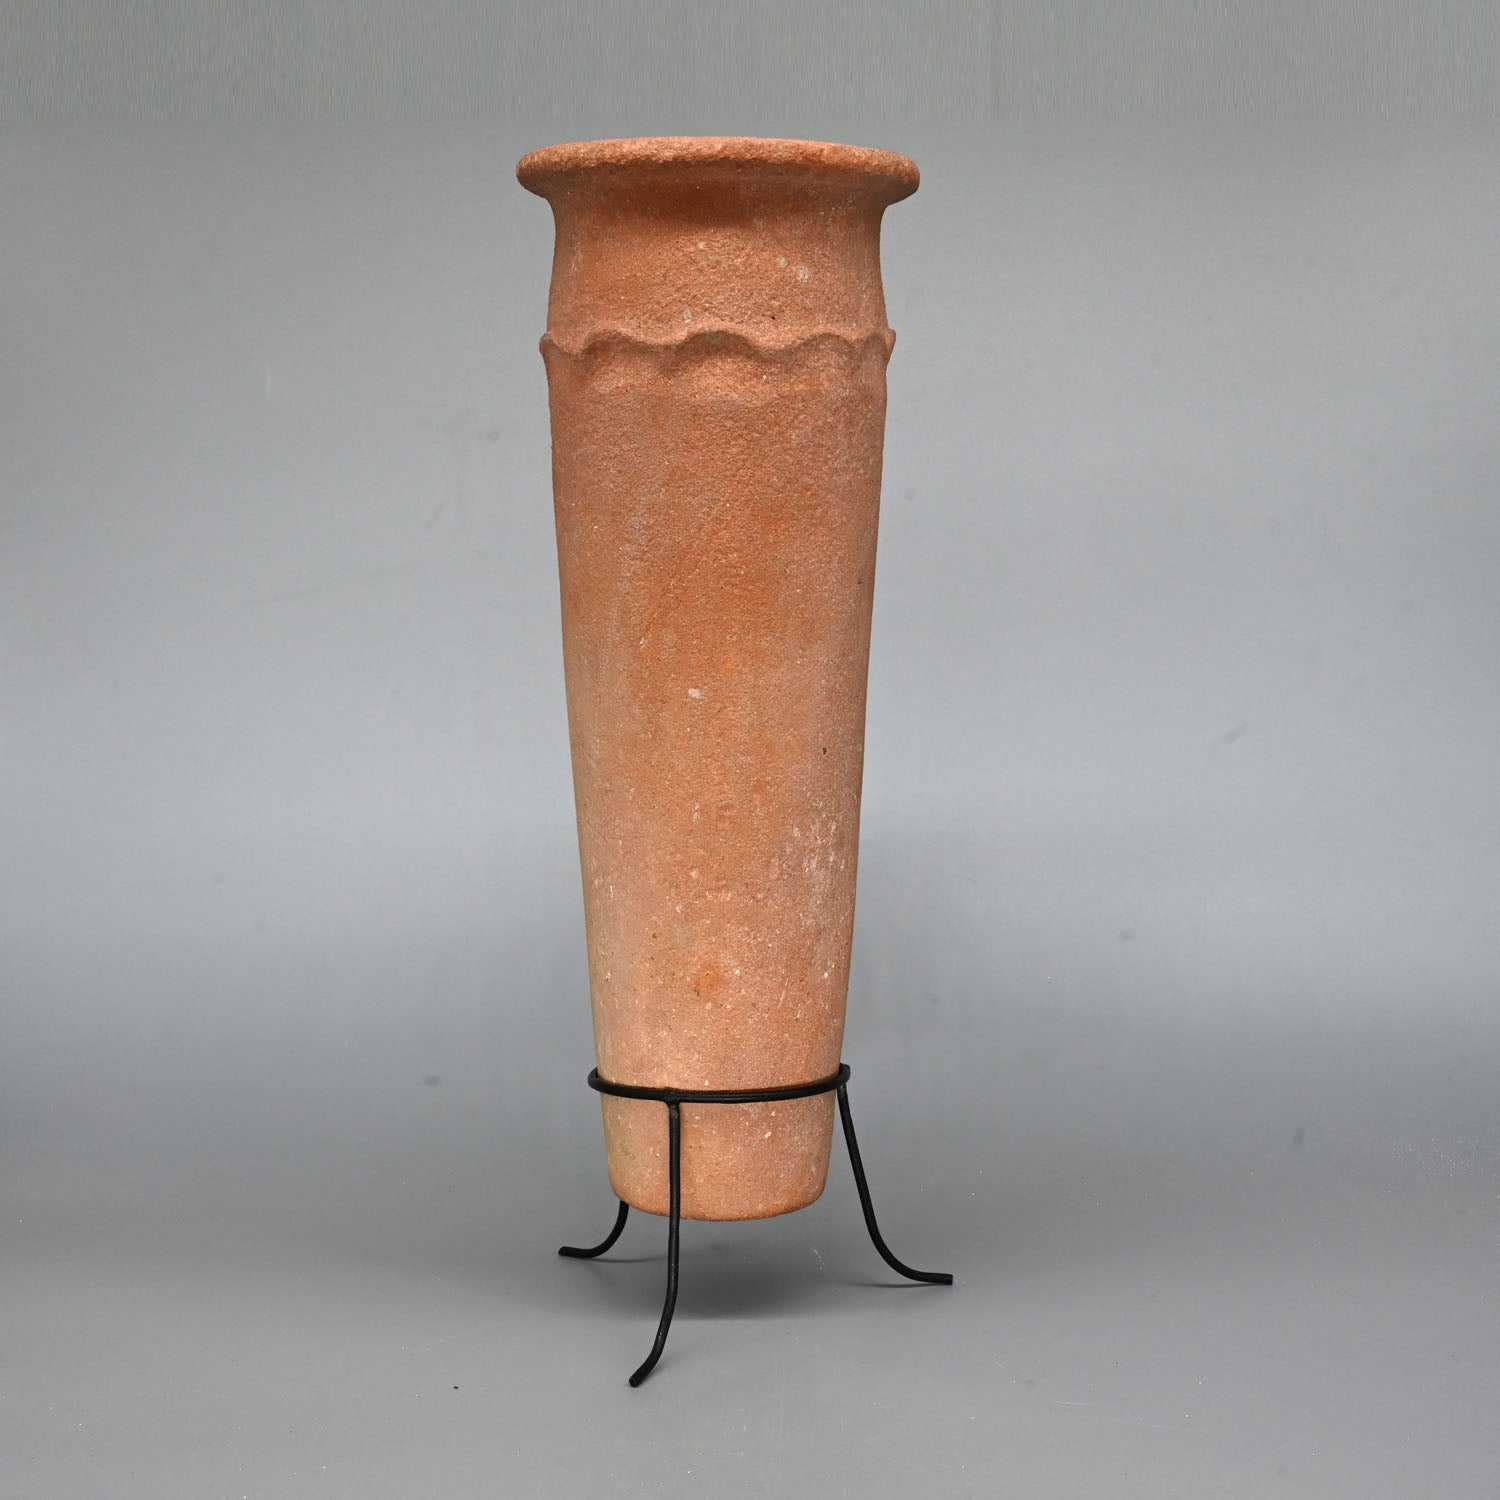 An Egyptian PreDynastic Nile Clay Cylindrical Jar, Pre-Dynastic Period, ca. 3100 - 3000 BCE